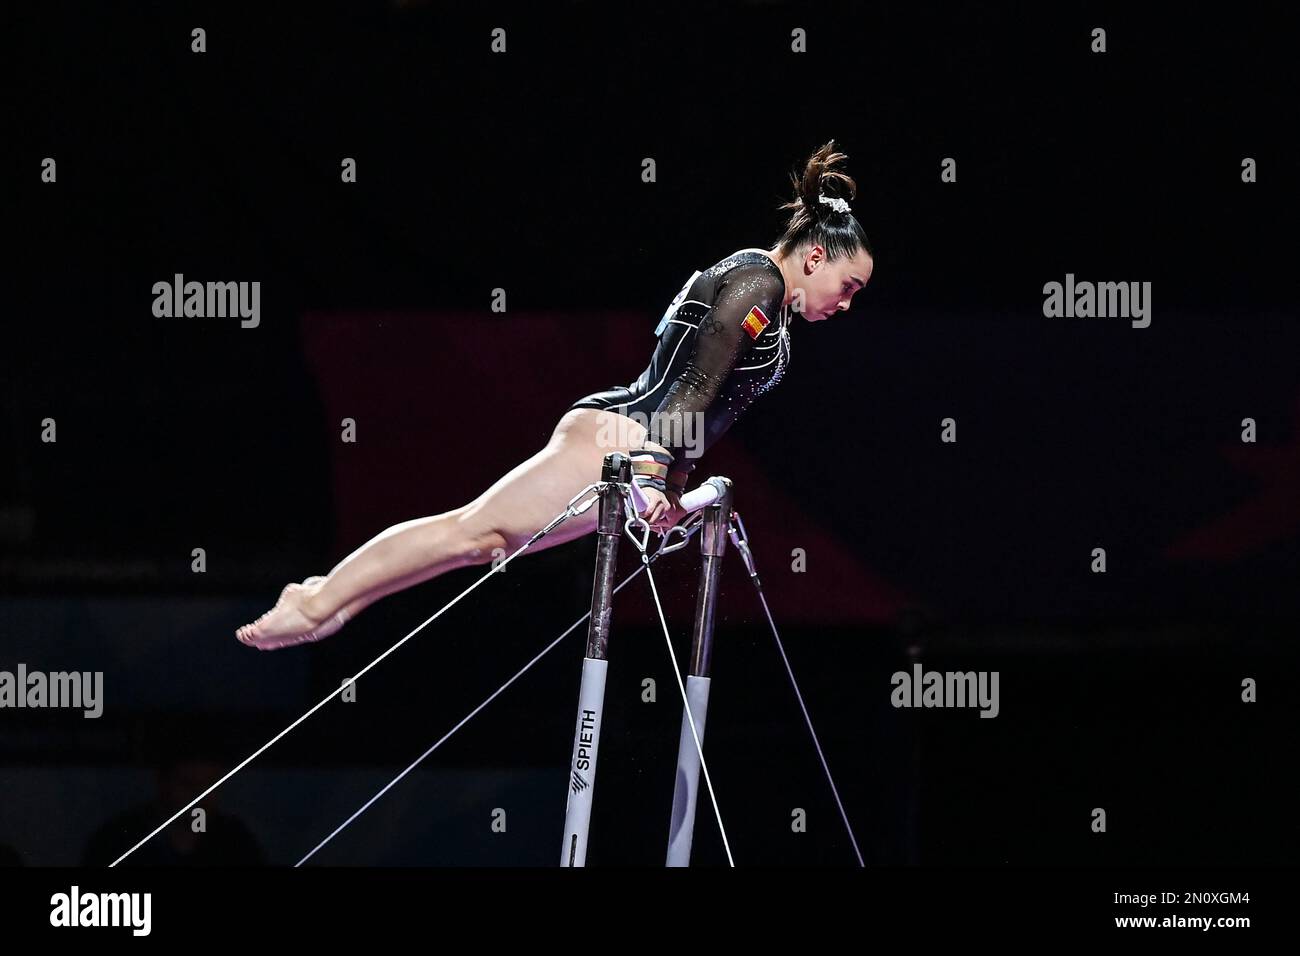 Alba Petisco (Espagne). Championnats d'Europe Munich 2022 : gymnastique artistique, finale de l'équipe féminine Banque D'Images